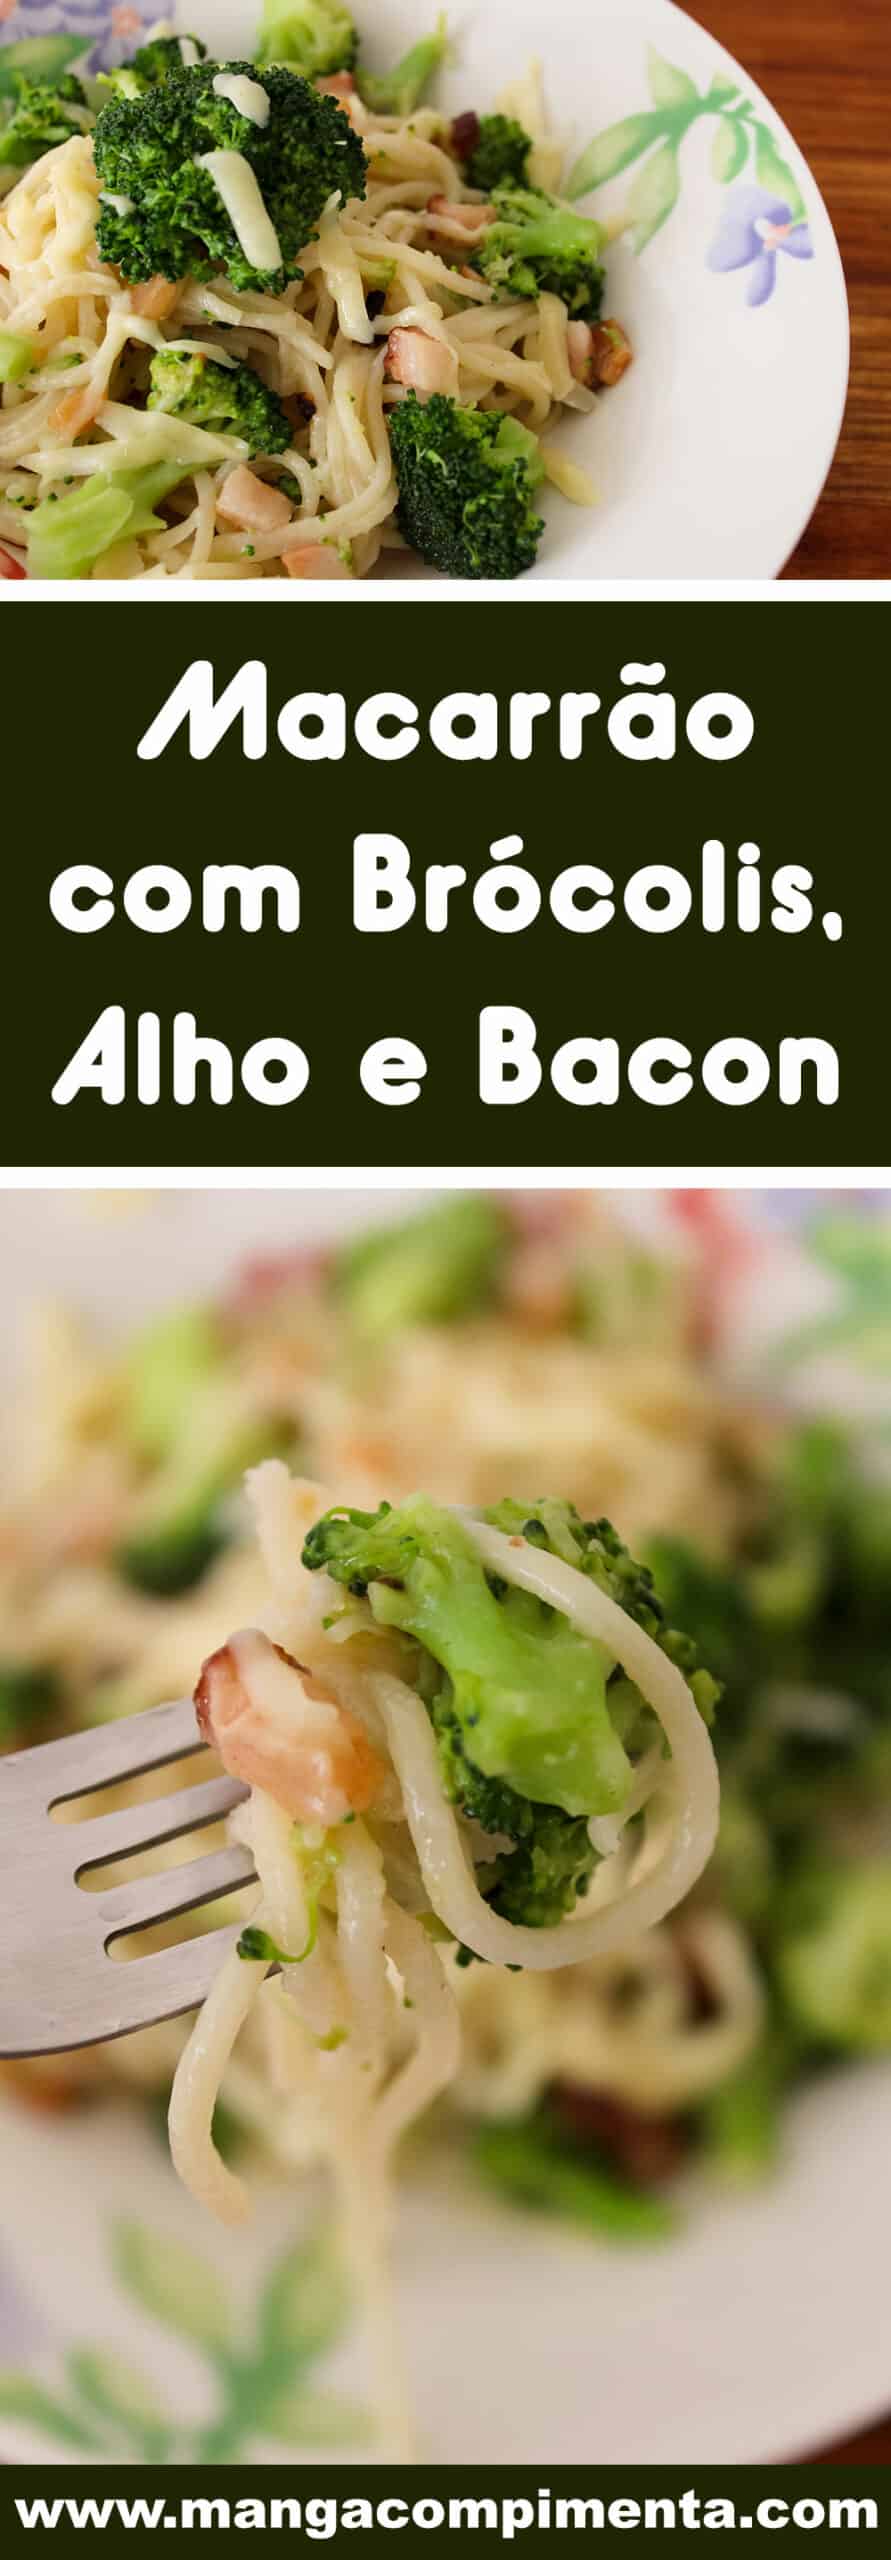 Receita de Macarrão com Brócolis, Alho e Bacon -  almoço ou jantar para o dia-a-dia!